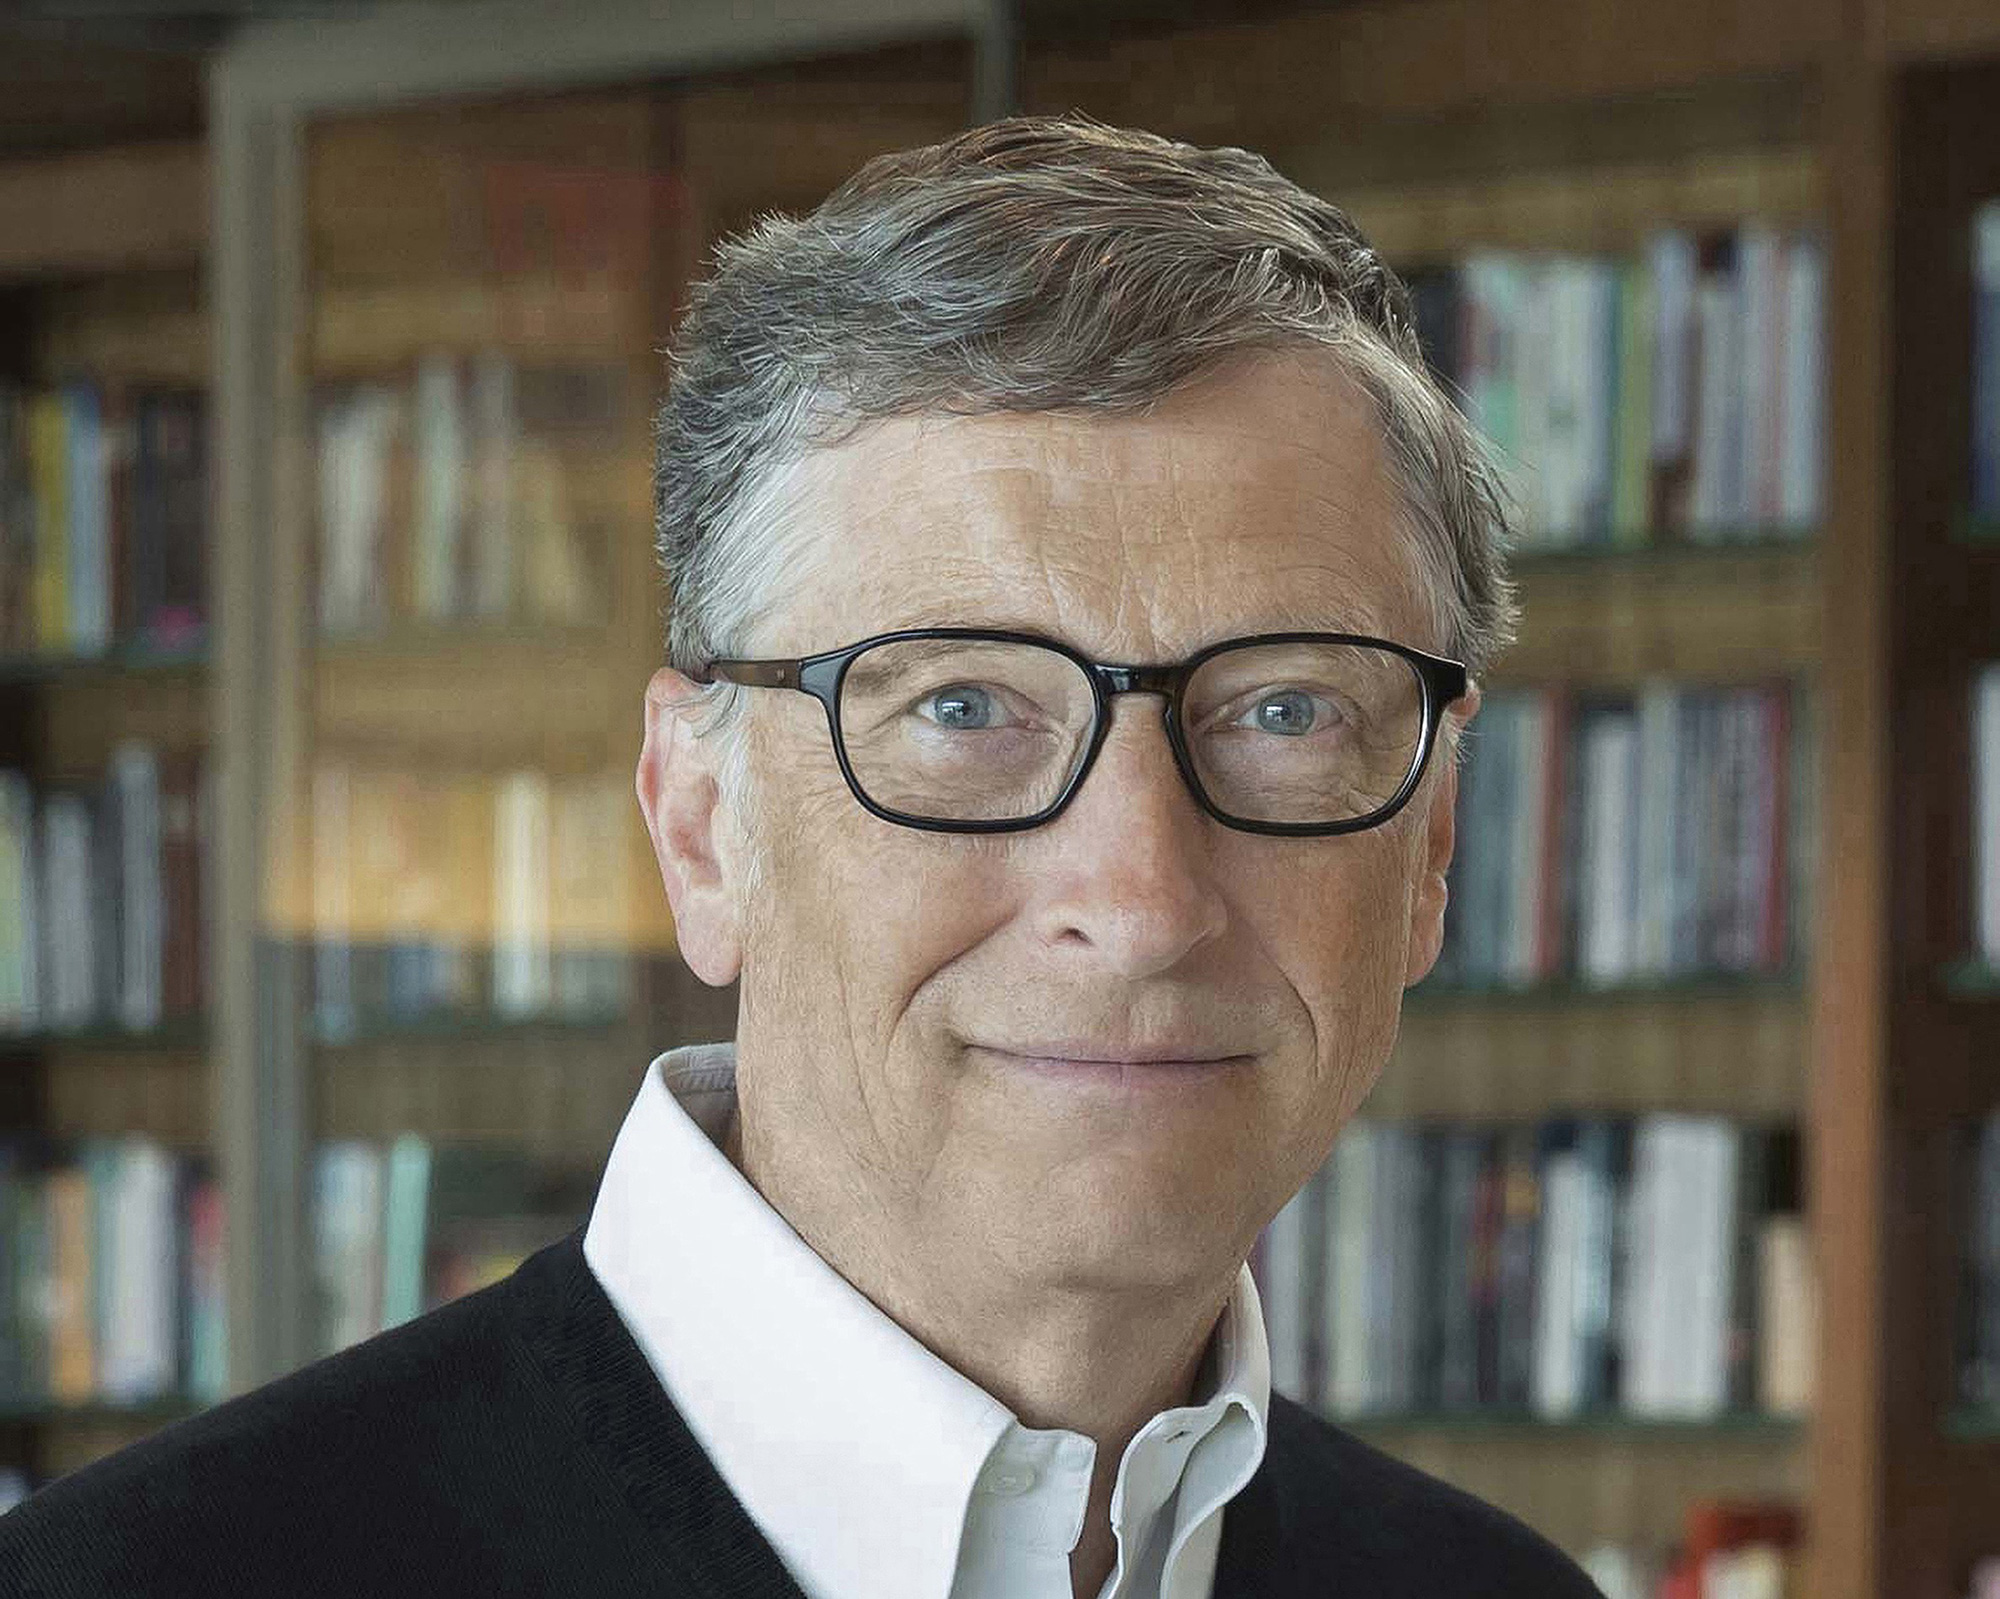 Tỉ phú Bill Gates: Sinh ra trong 20 năm tới tốt hơn bất kỳ thời nào trong quá khứ - Ảnh 1.